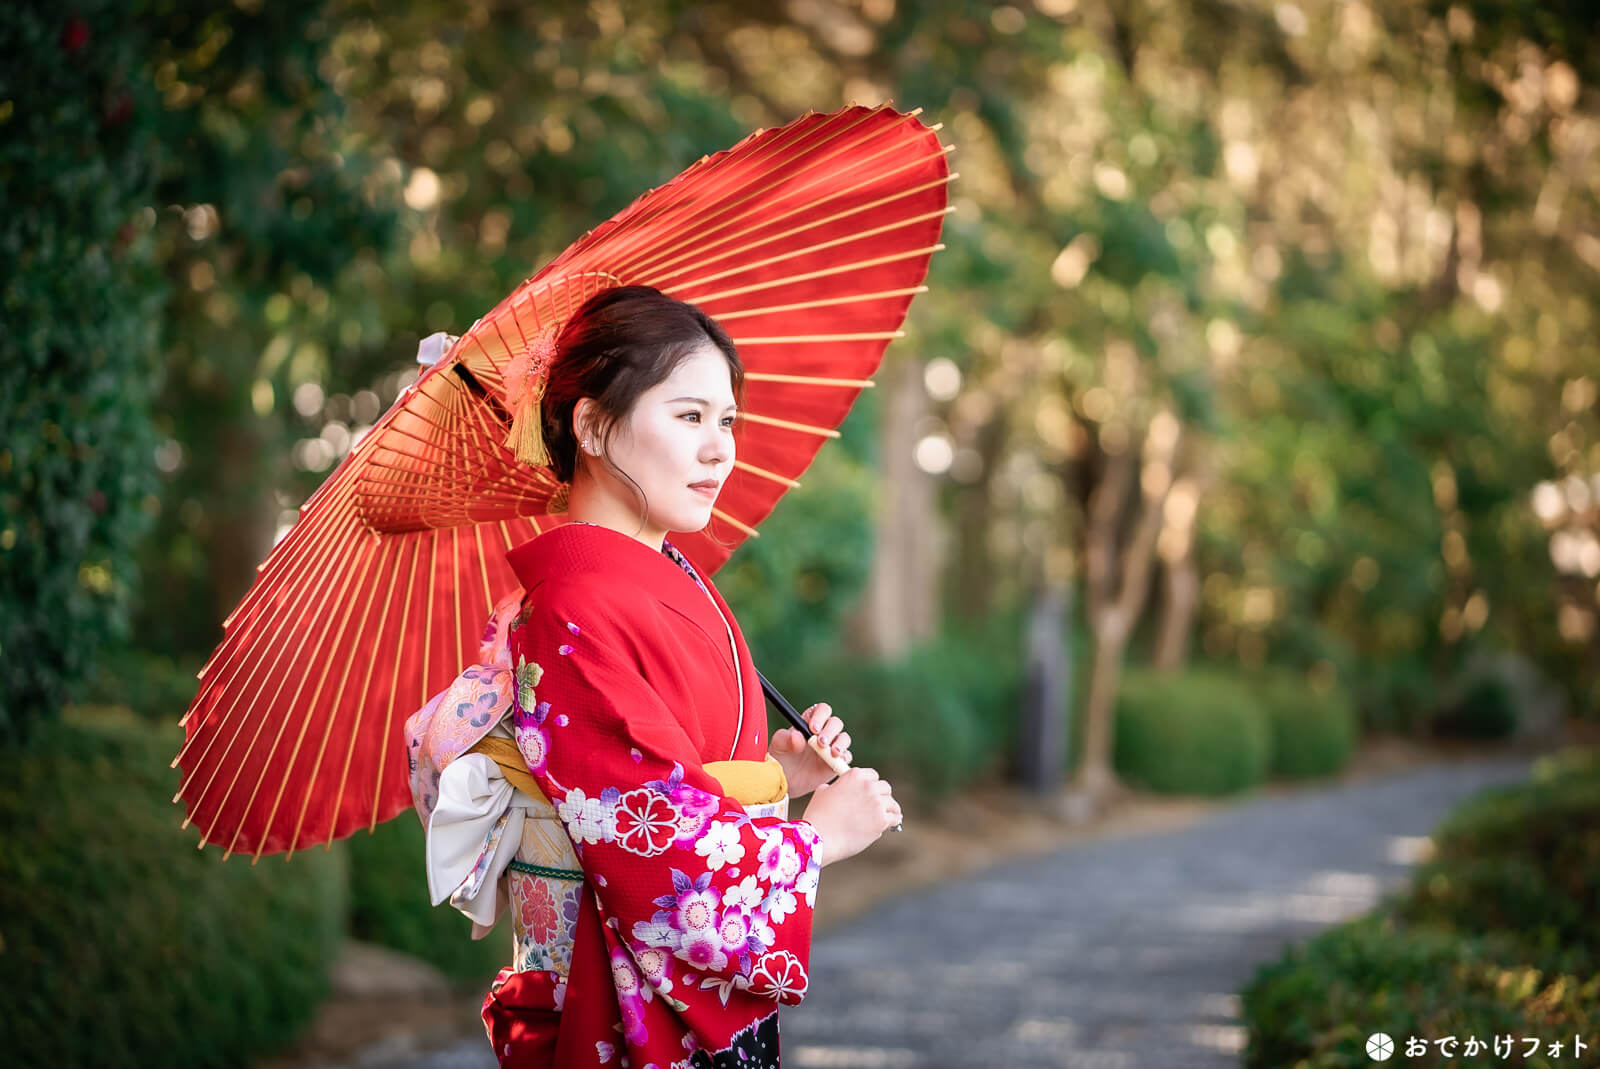 大濠公園日本庭園で成人式のロケーション前撮り